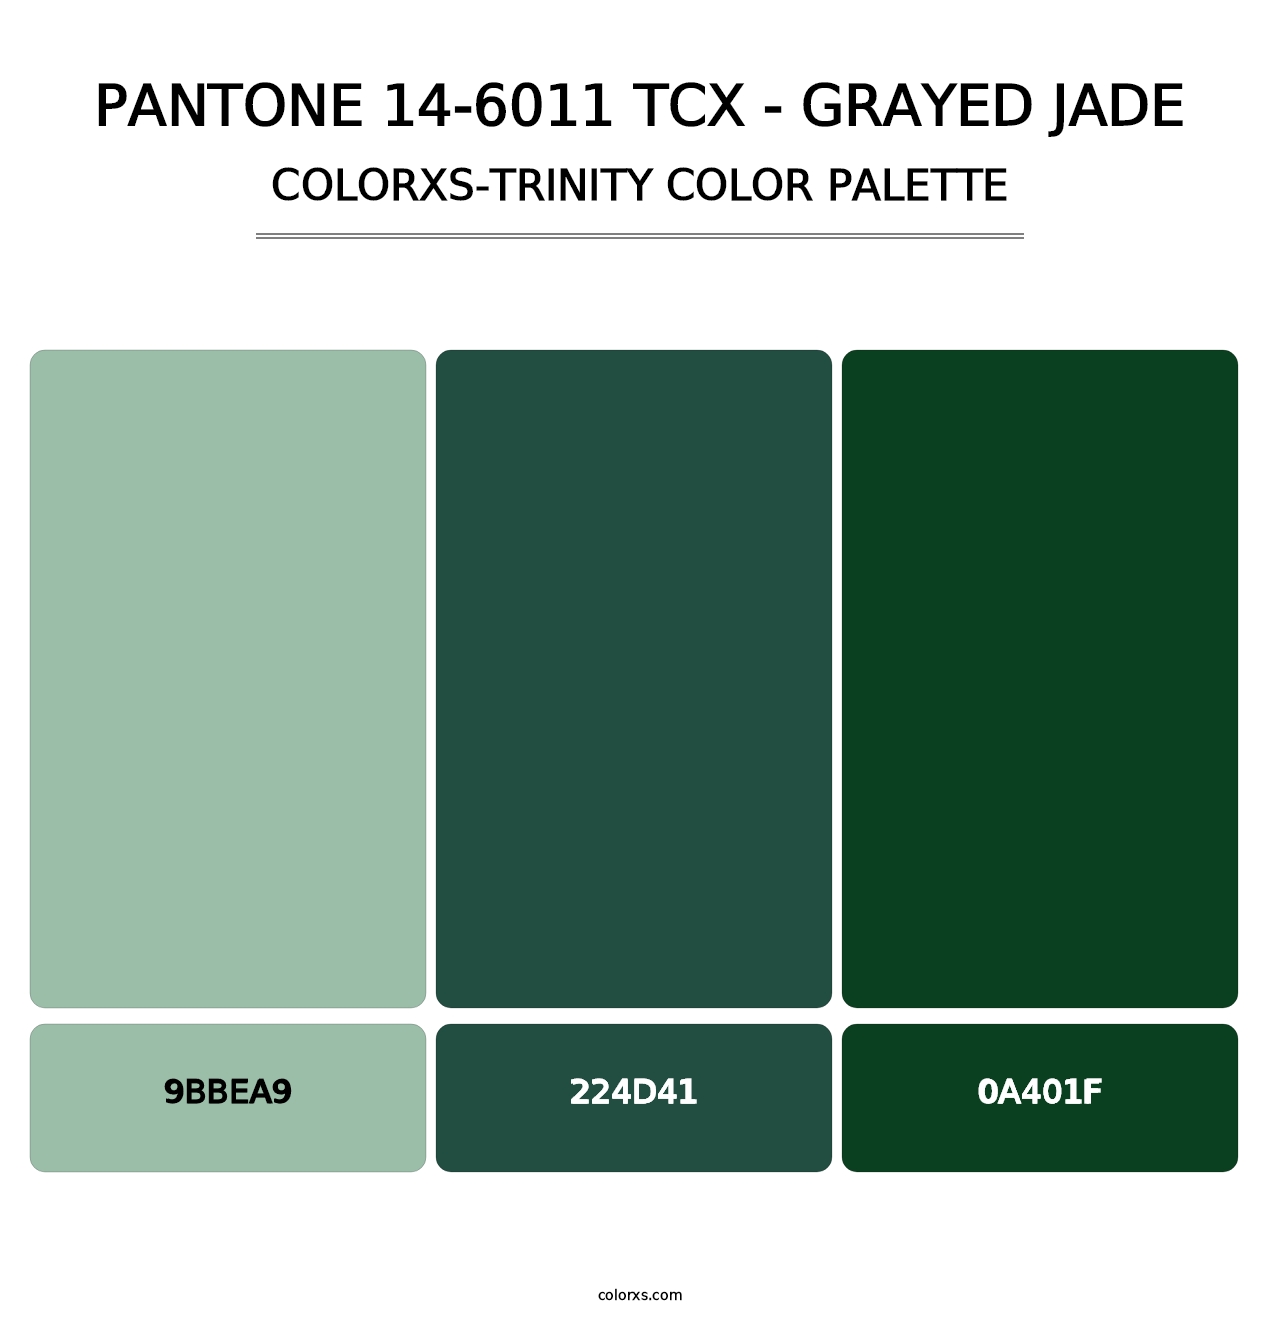 PANTONE 14-6011 TCX - Grayed Jade - Colorxs Trinity Palette